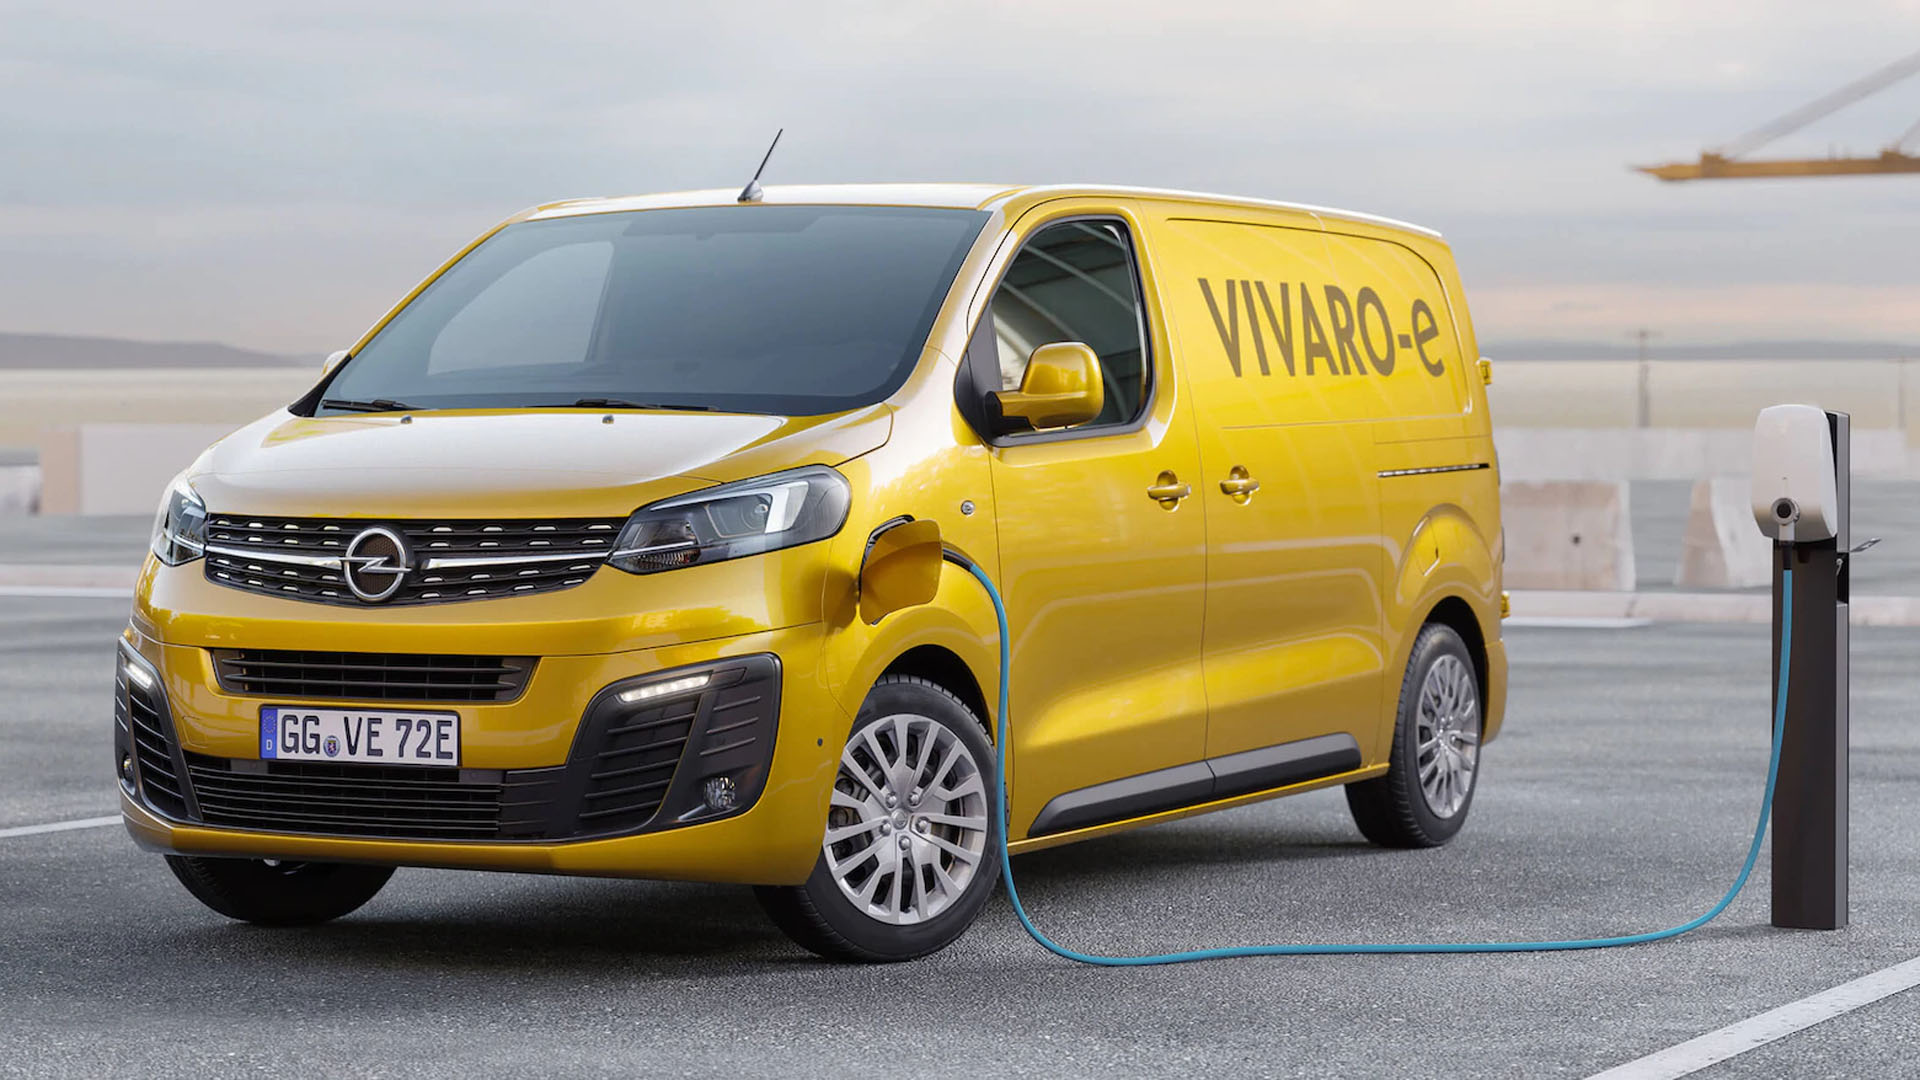 Opel desvela los detalles del Vivaro-e